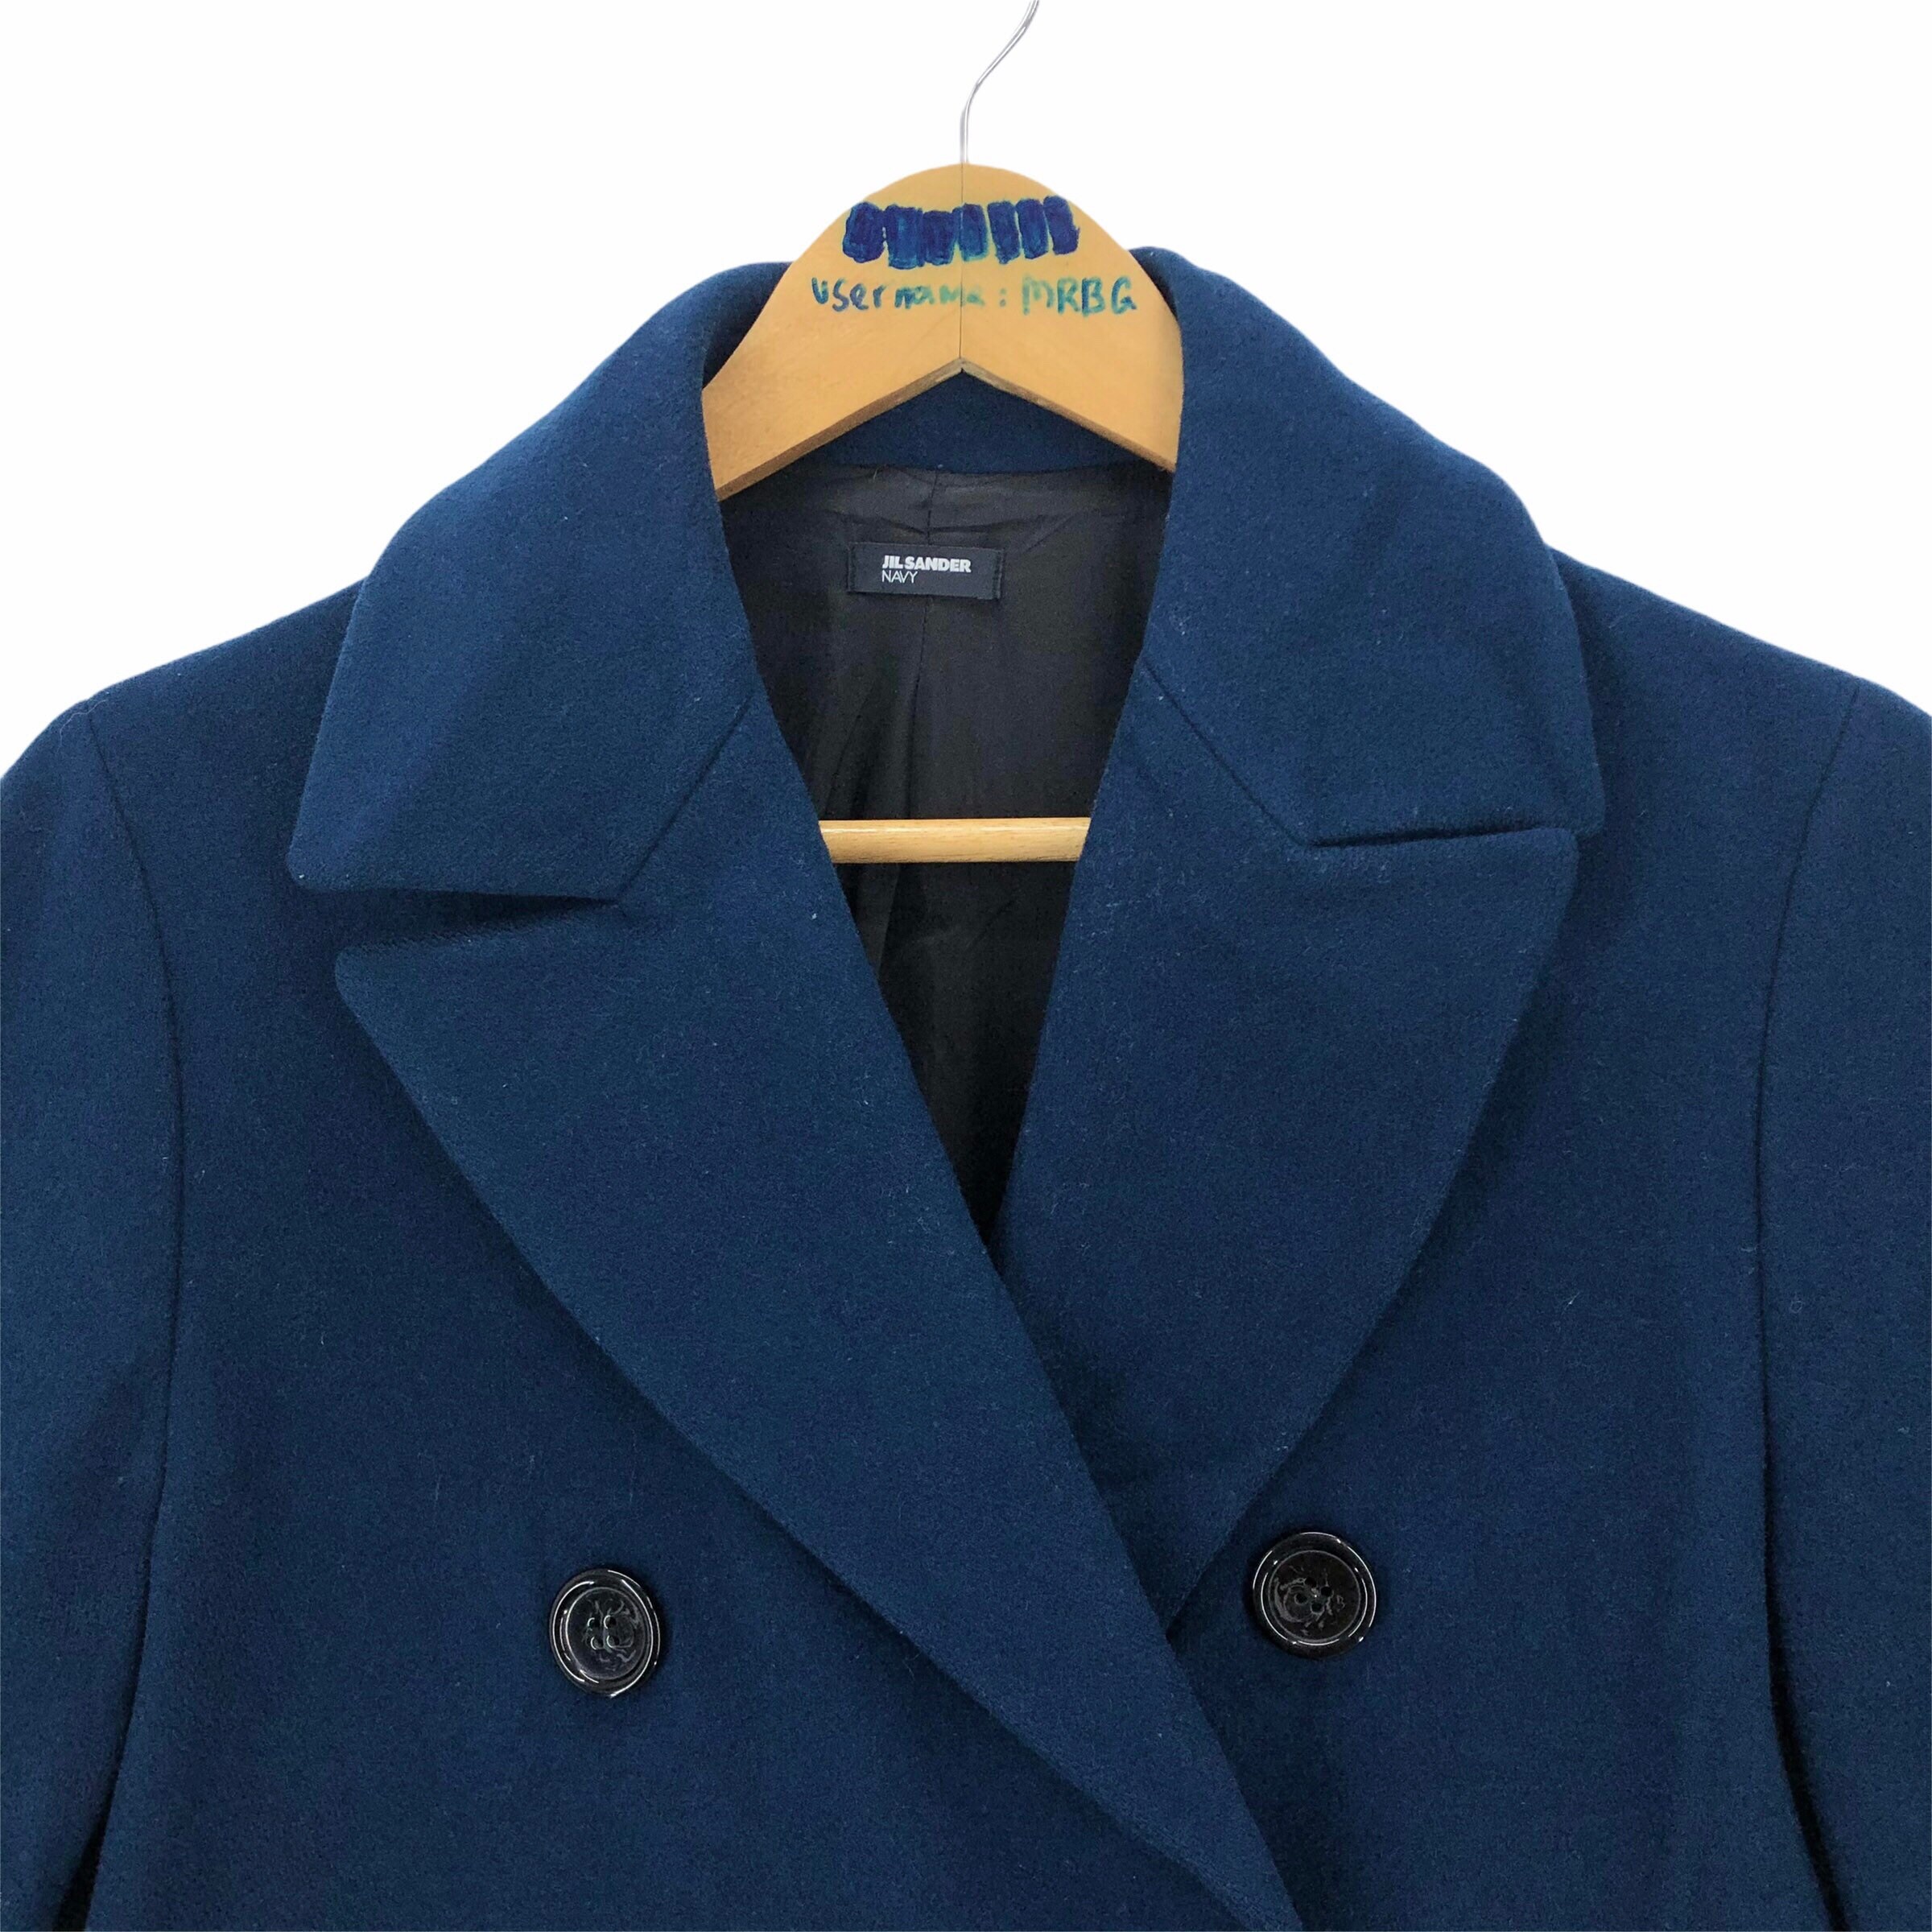 Jil Sander Navy Trench Coat Ready-to-wear Fall Winter 2015 Wool Peacoat ...